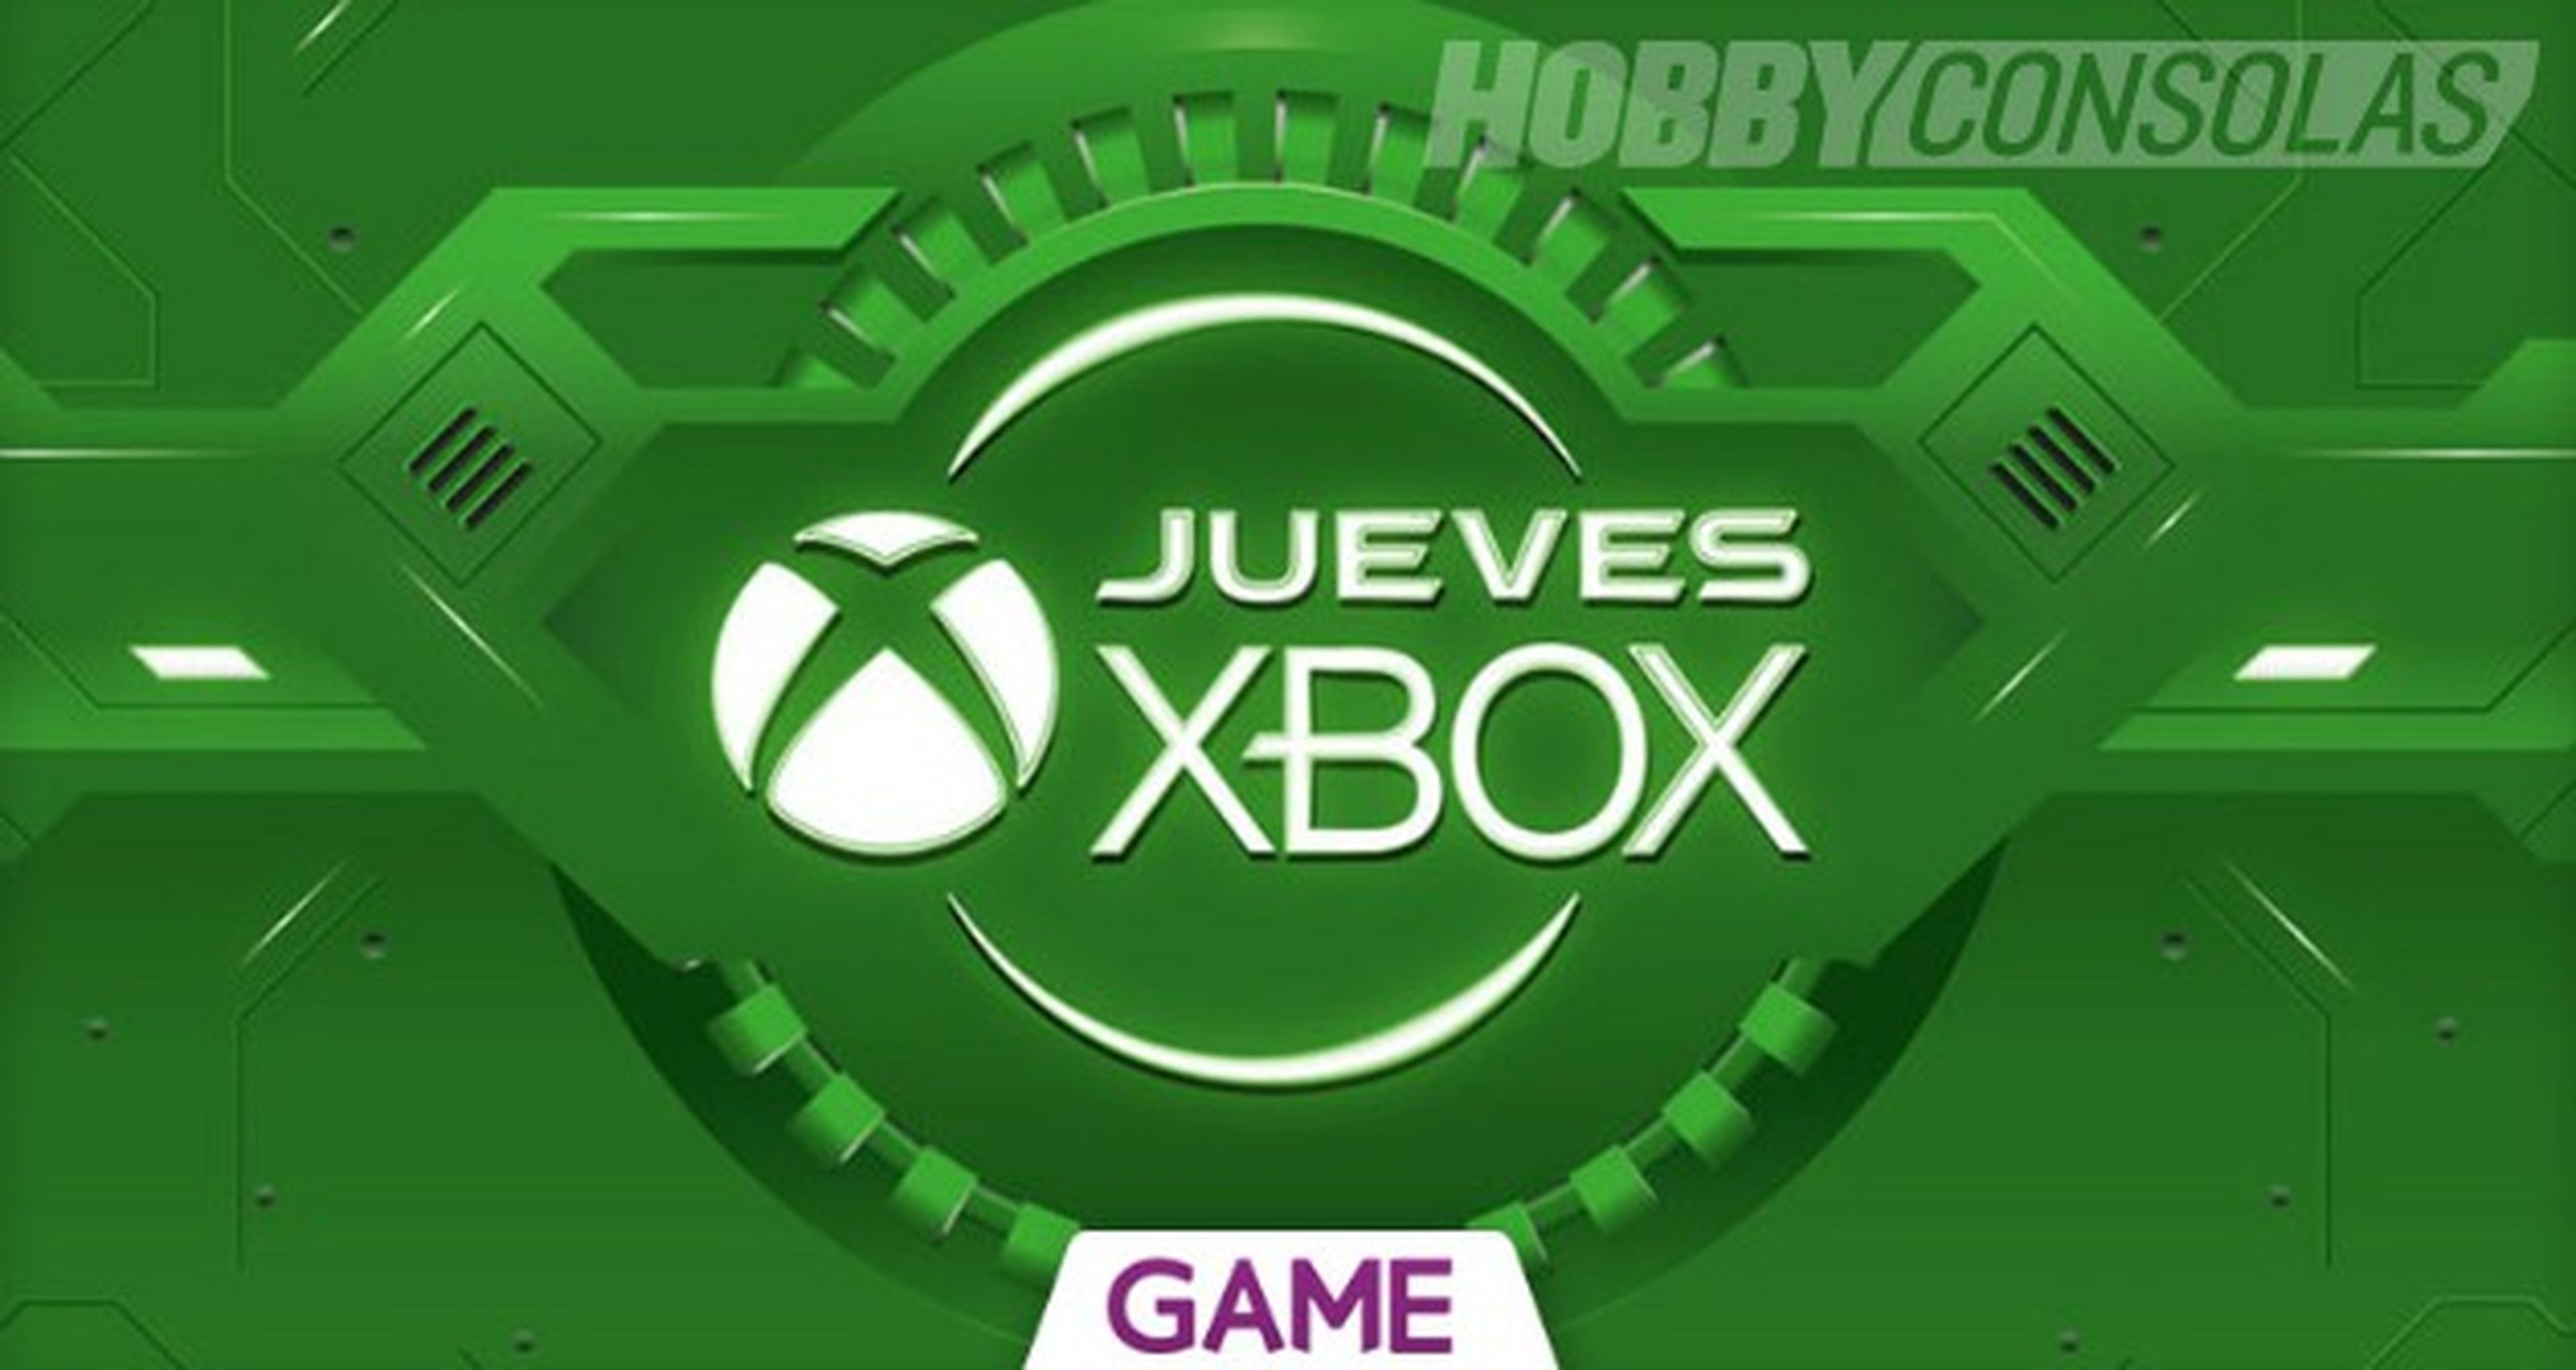 Jueves Xbox en GAME - Ofertas del 16/06/2016